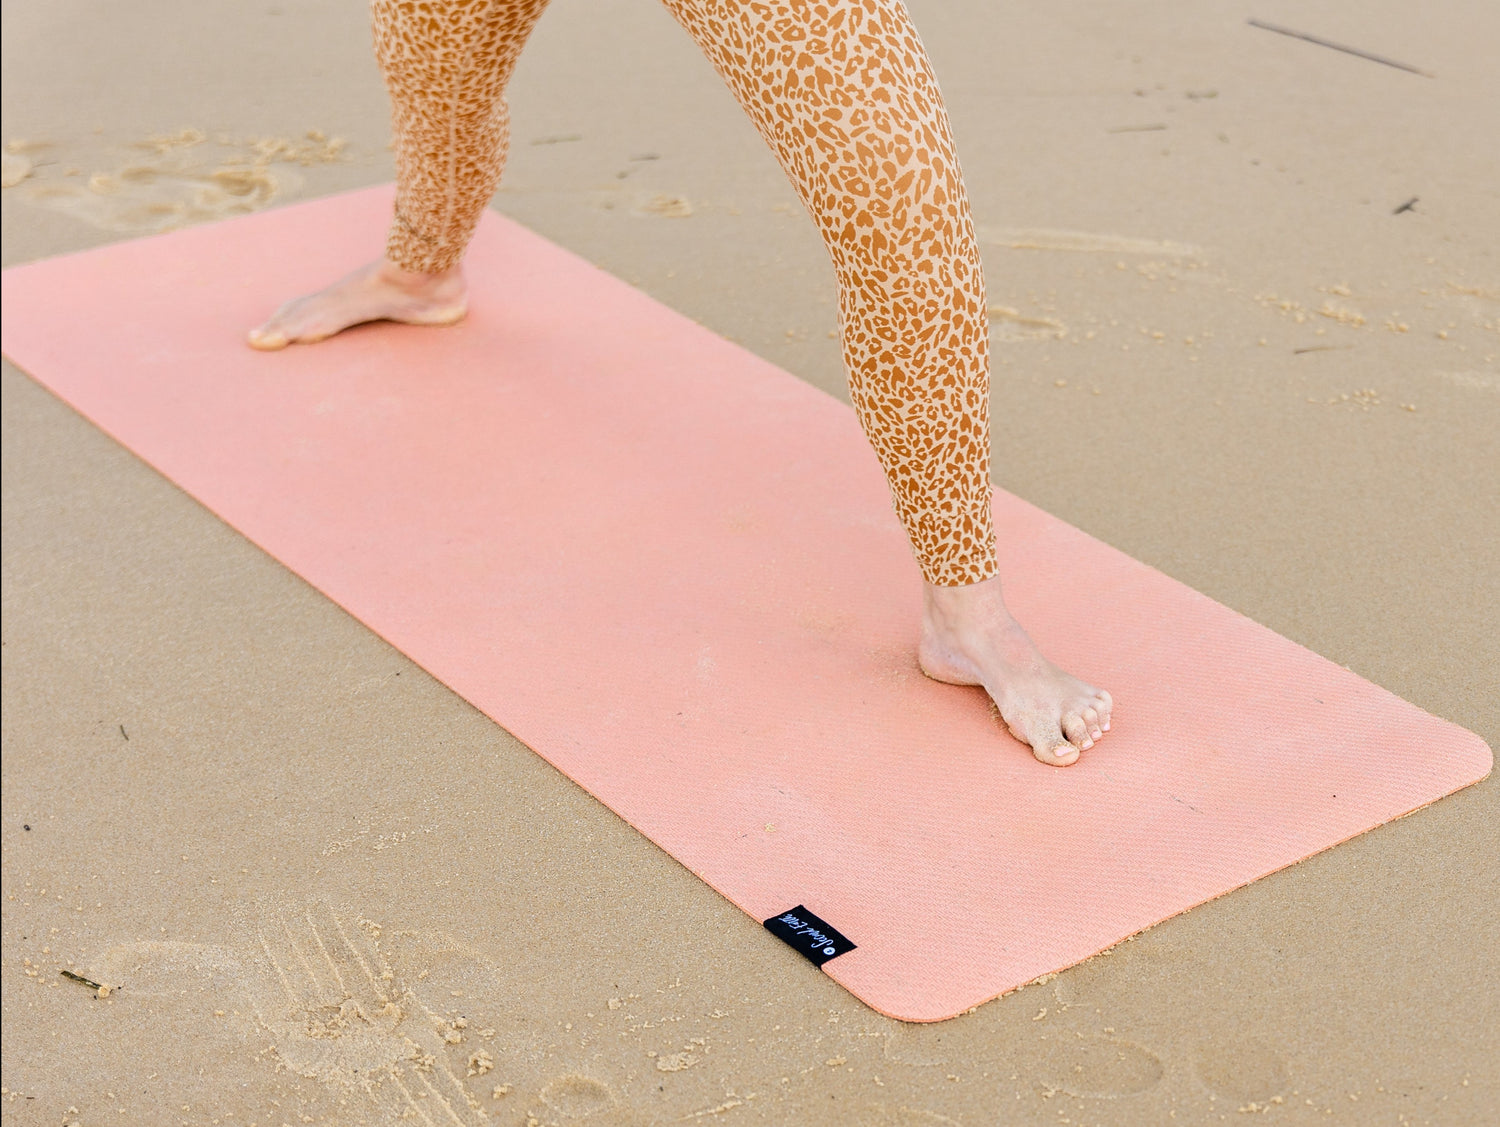 Voted Best Australian Yoga Mat